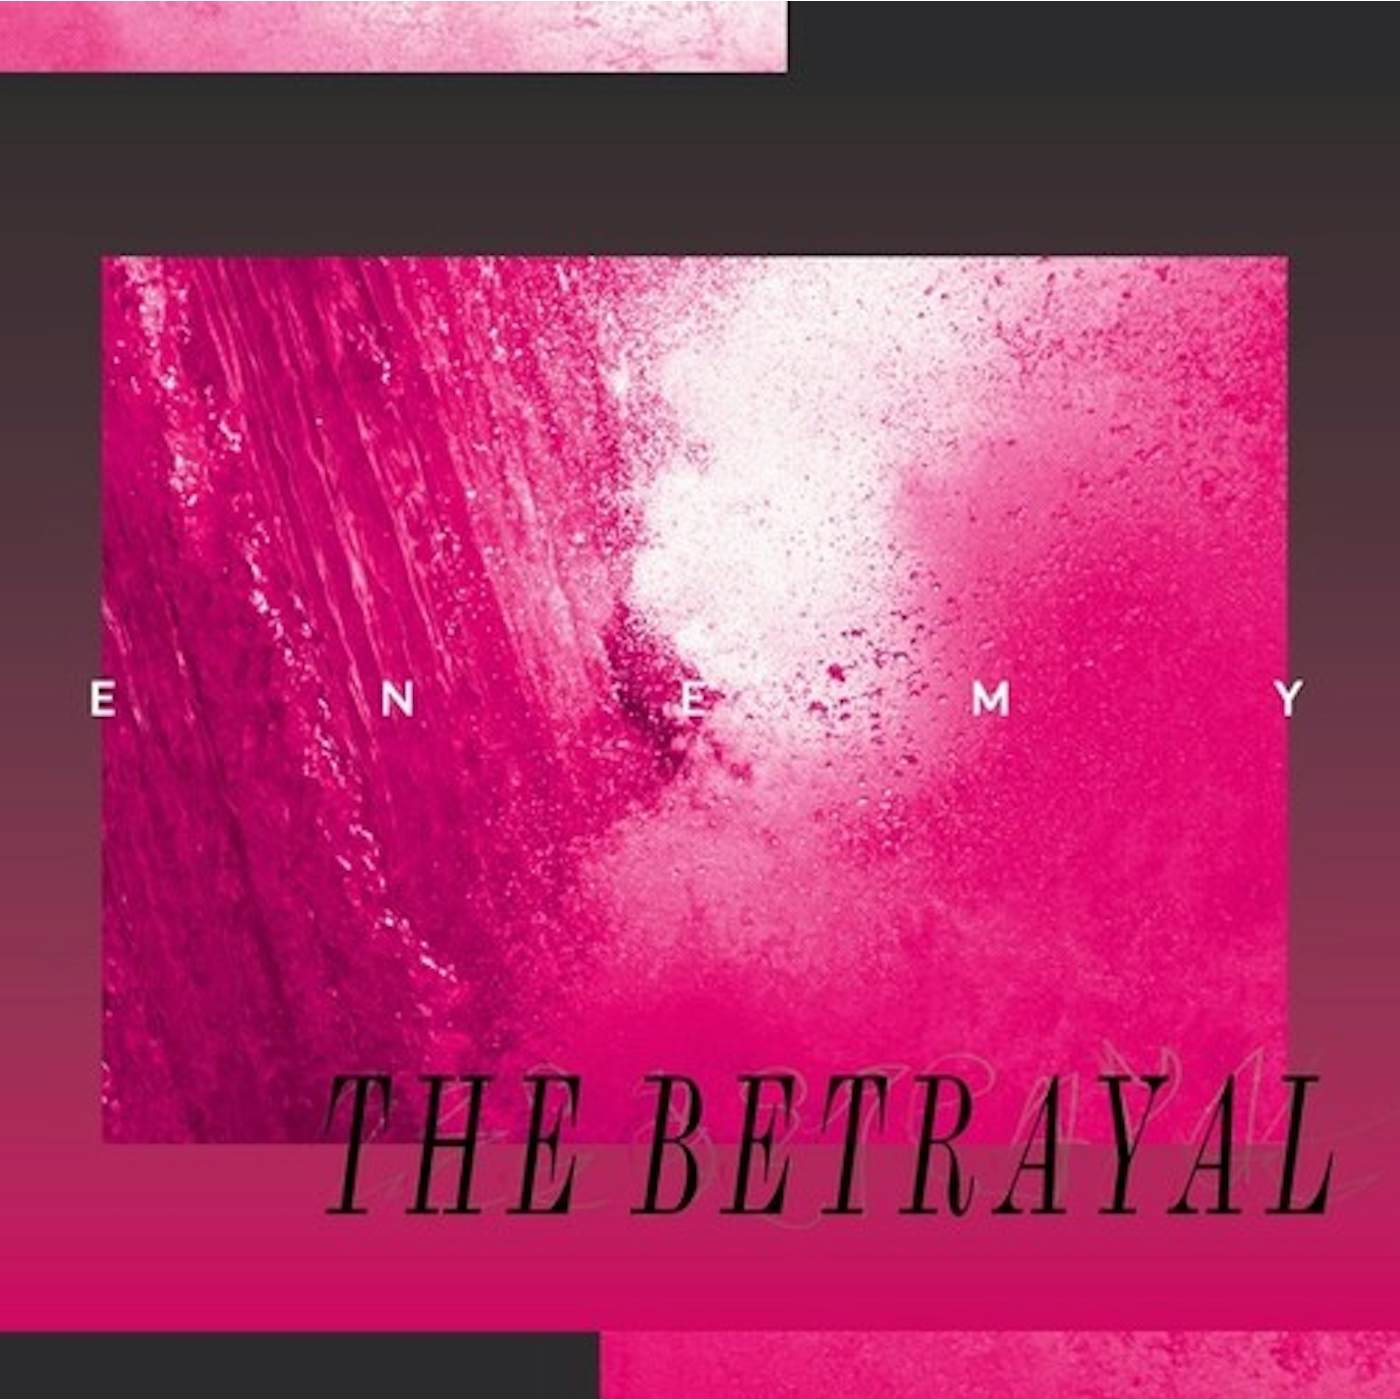 The Enemy BETRAYAL Vinyl Record